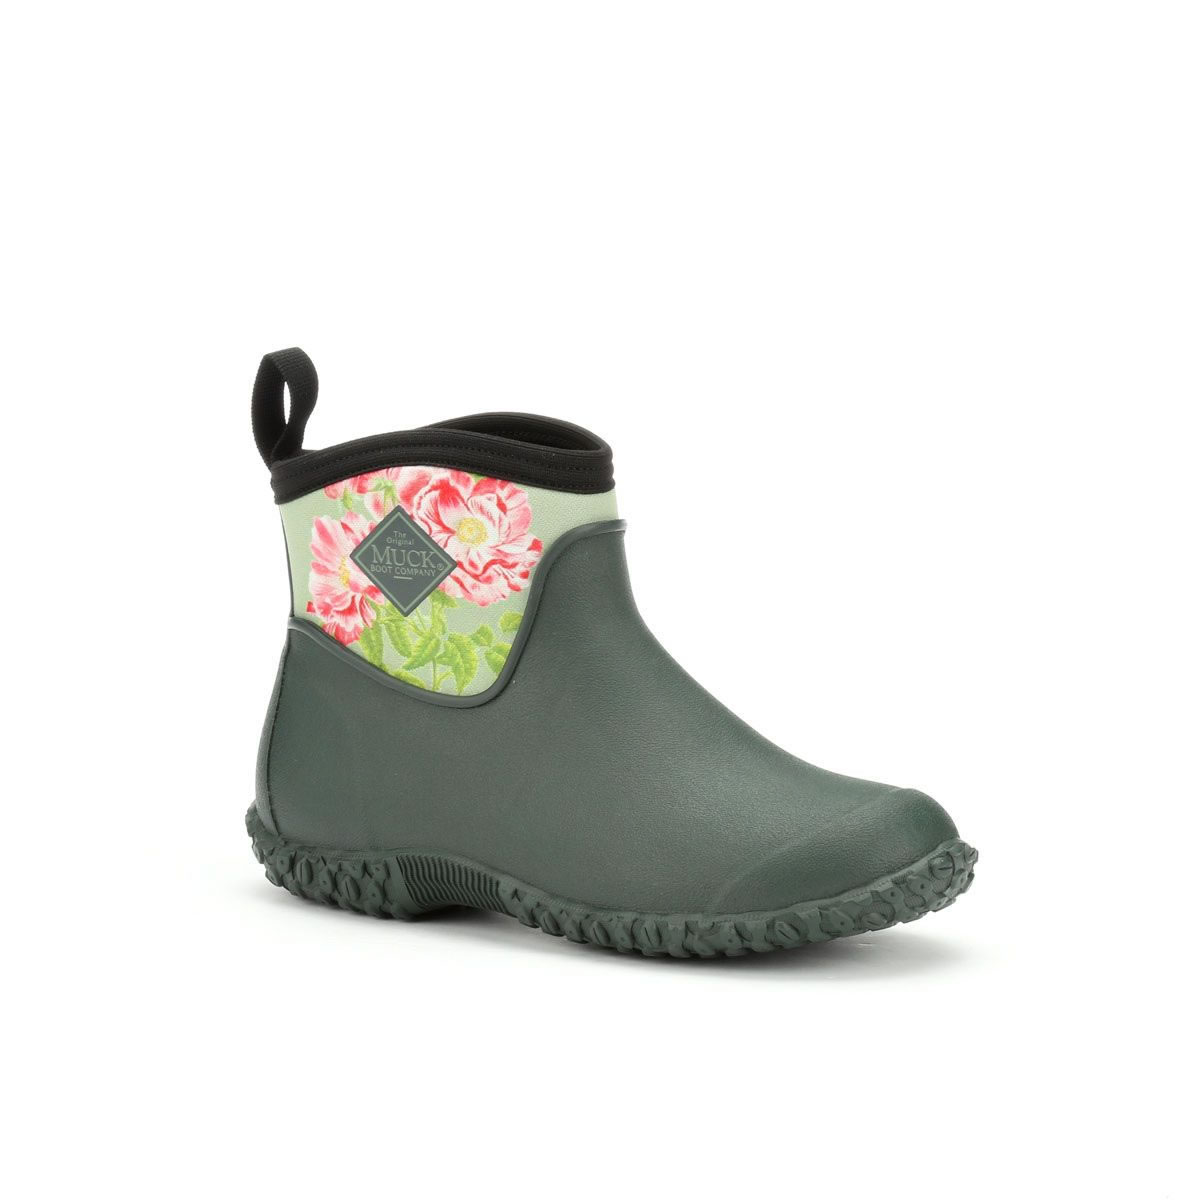 muck boots women's muckster ii ankle rain boots